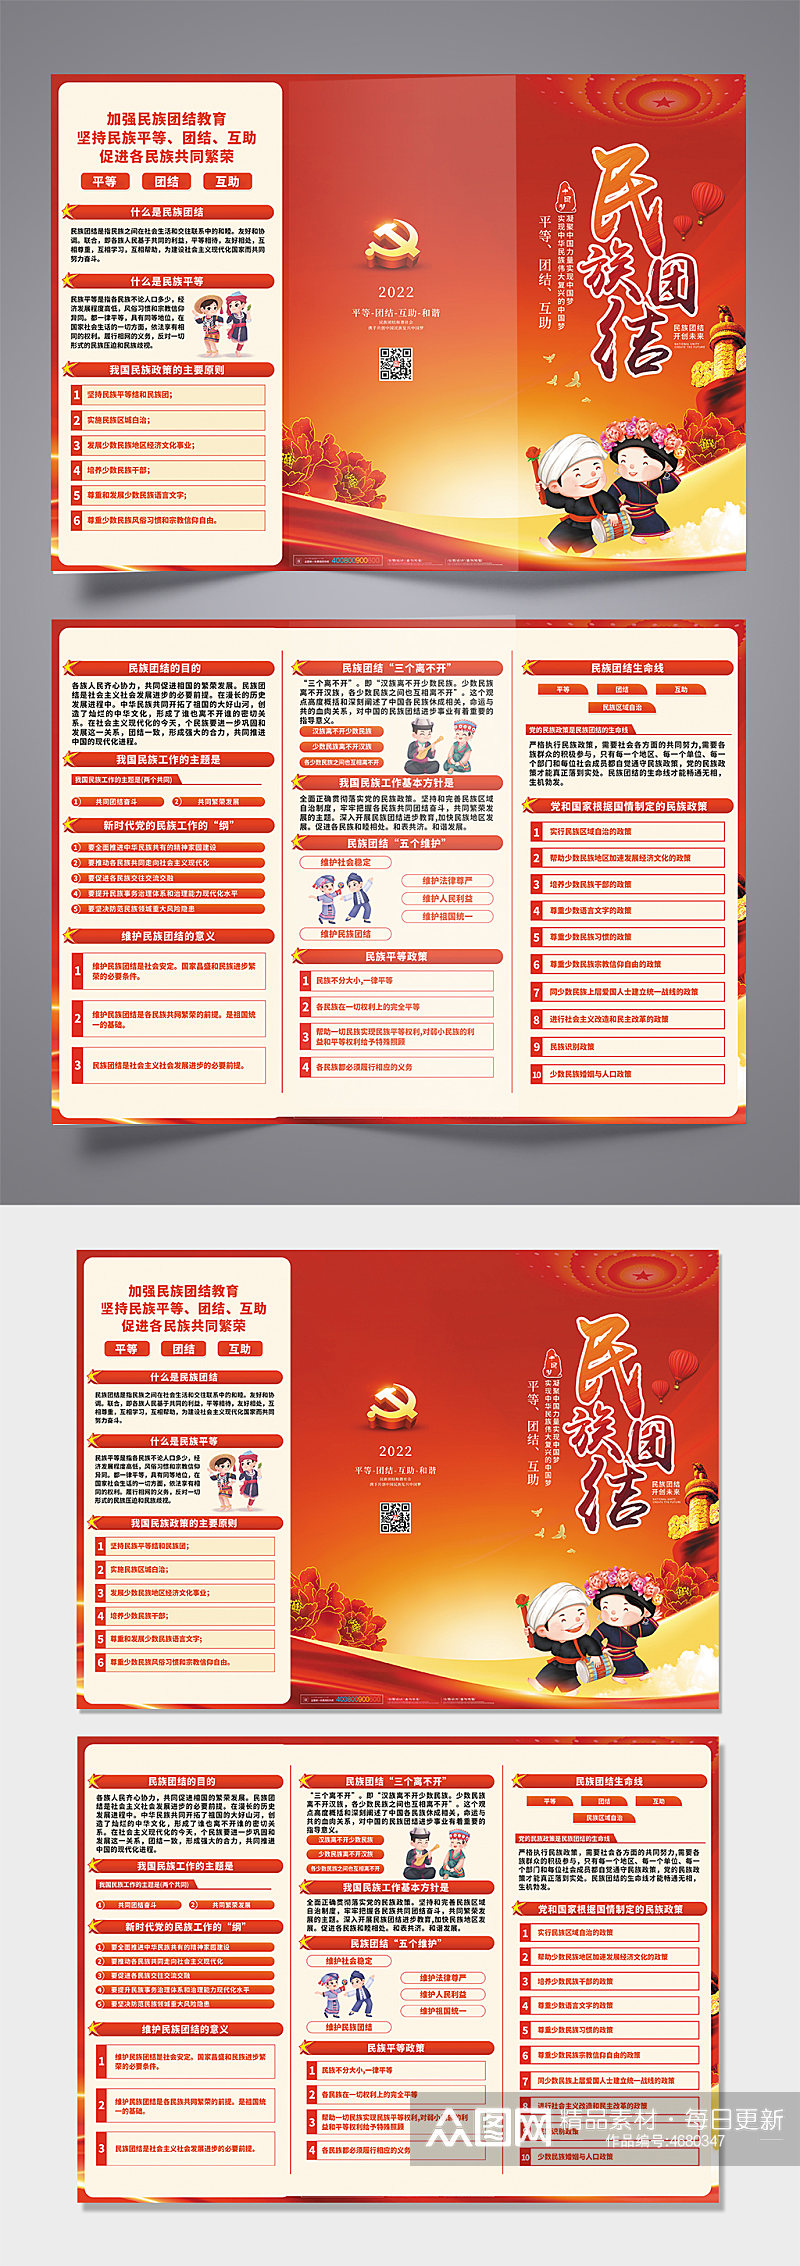 红色大气手绘民族团结网络党建三折页图素材